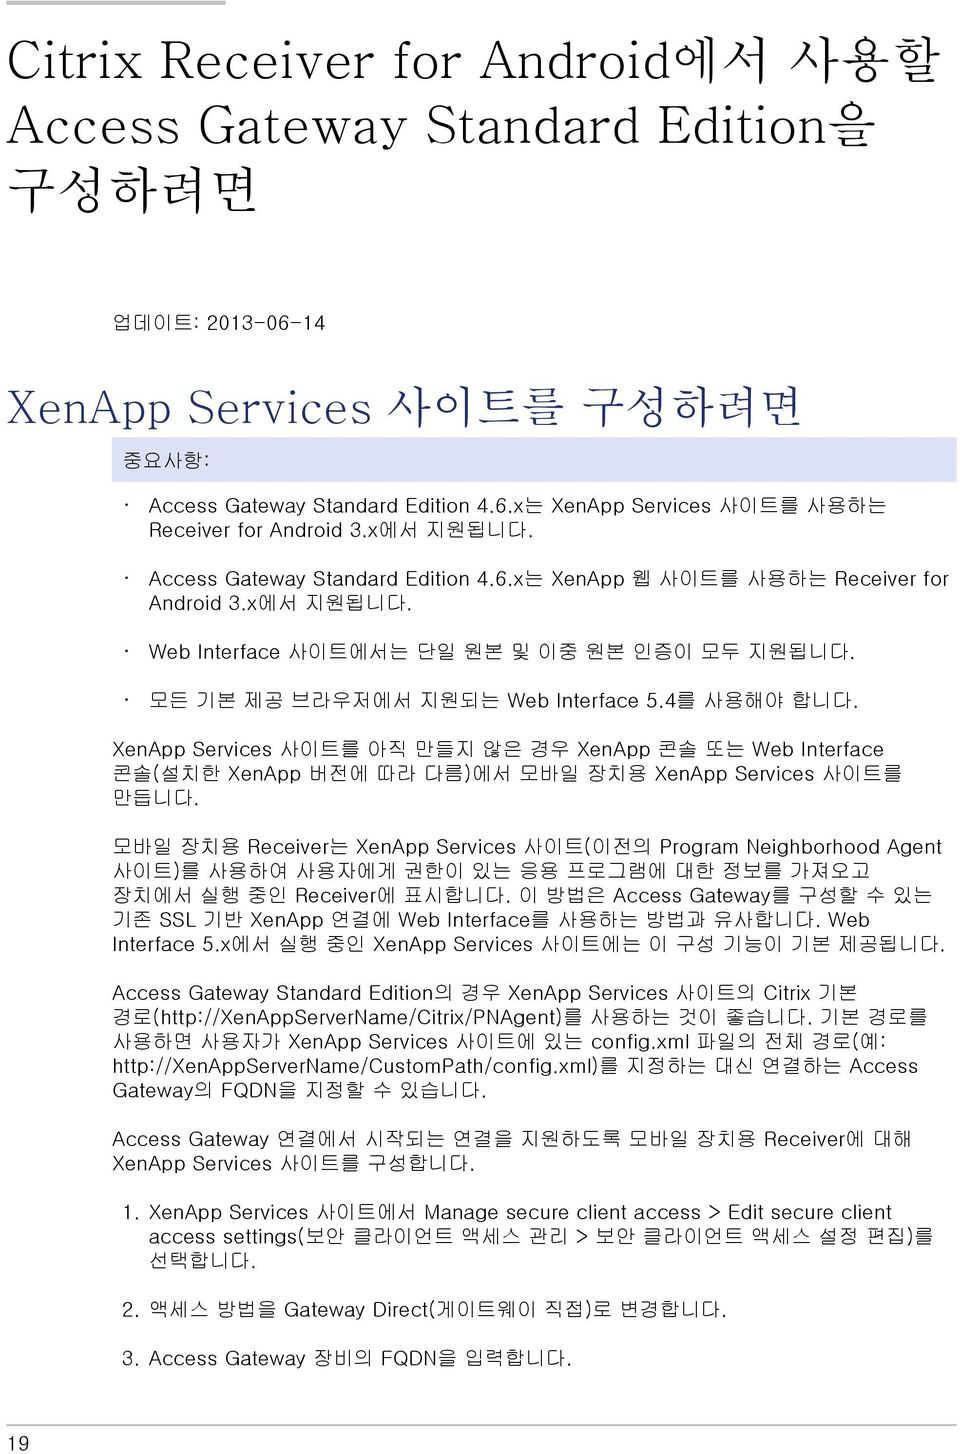 4를 사용해야 합니다. XenApp Services 사이트를 아직 만들지 않은 경우 XenApp 콘솔 또는 Web Interface 콘솔(설치한 XenApp 버전에 따라 다름)에서 모바일 장치용 XenApp Services 사이트를 만듭니다.